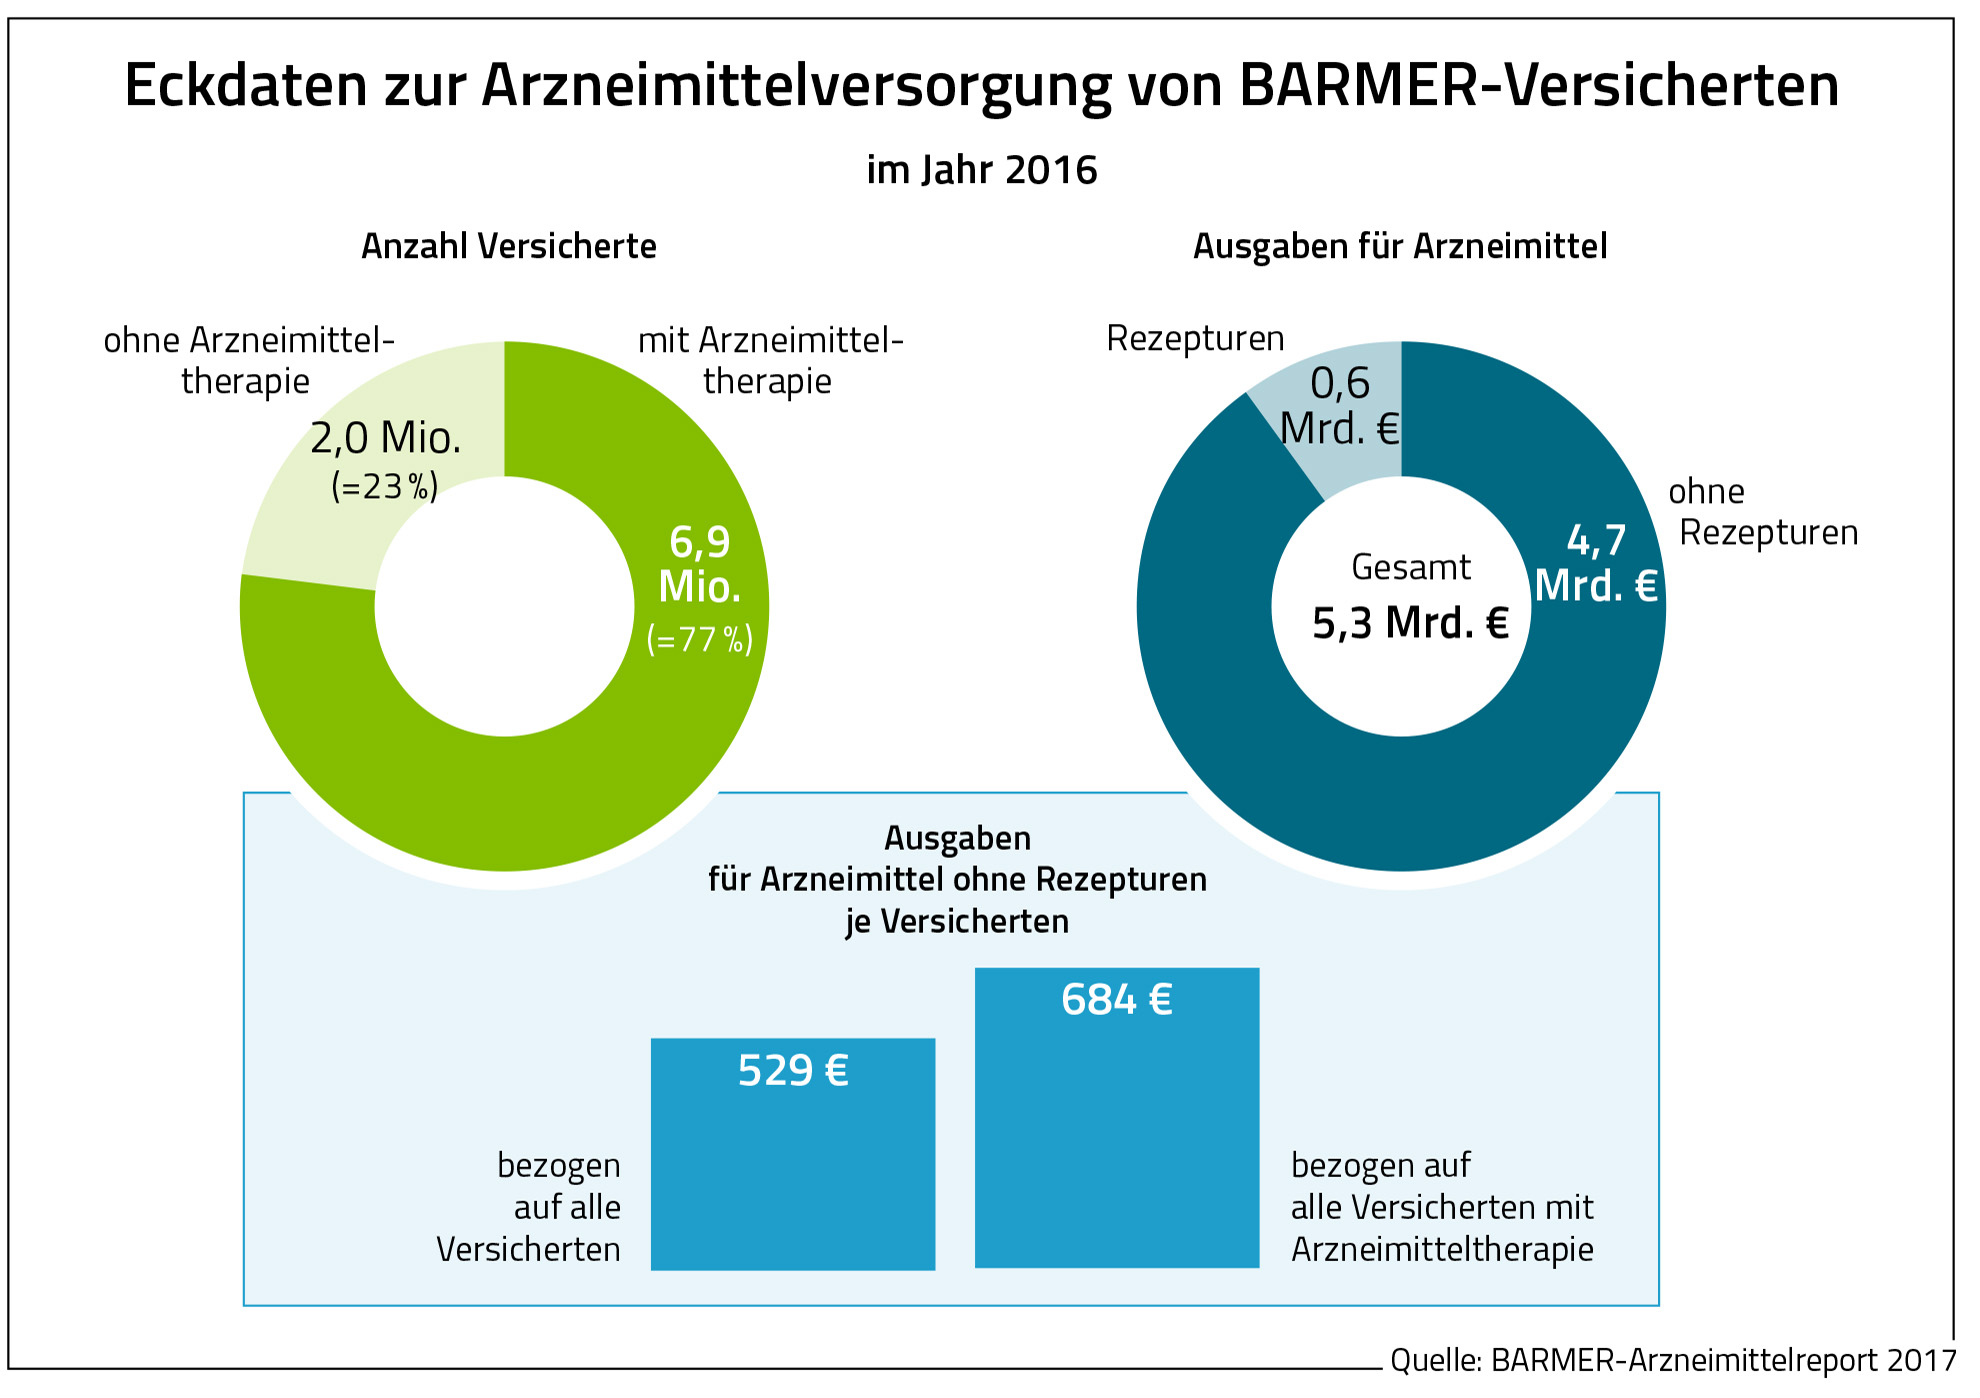 Die Grafik zeigt die Eckdaten zur Arzneimittelversorgung von Barmer-Versicherten